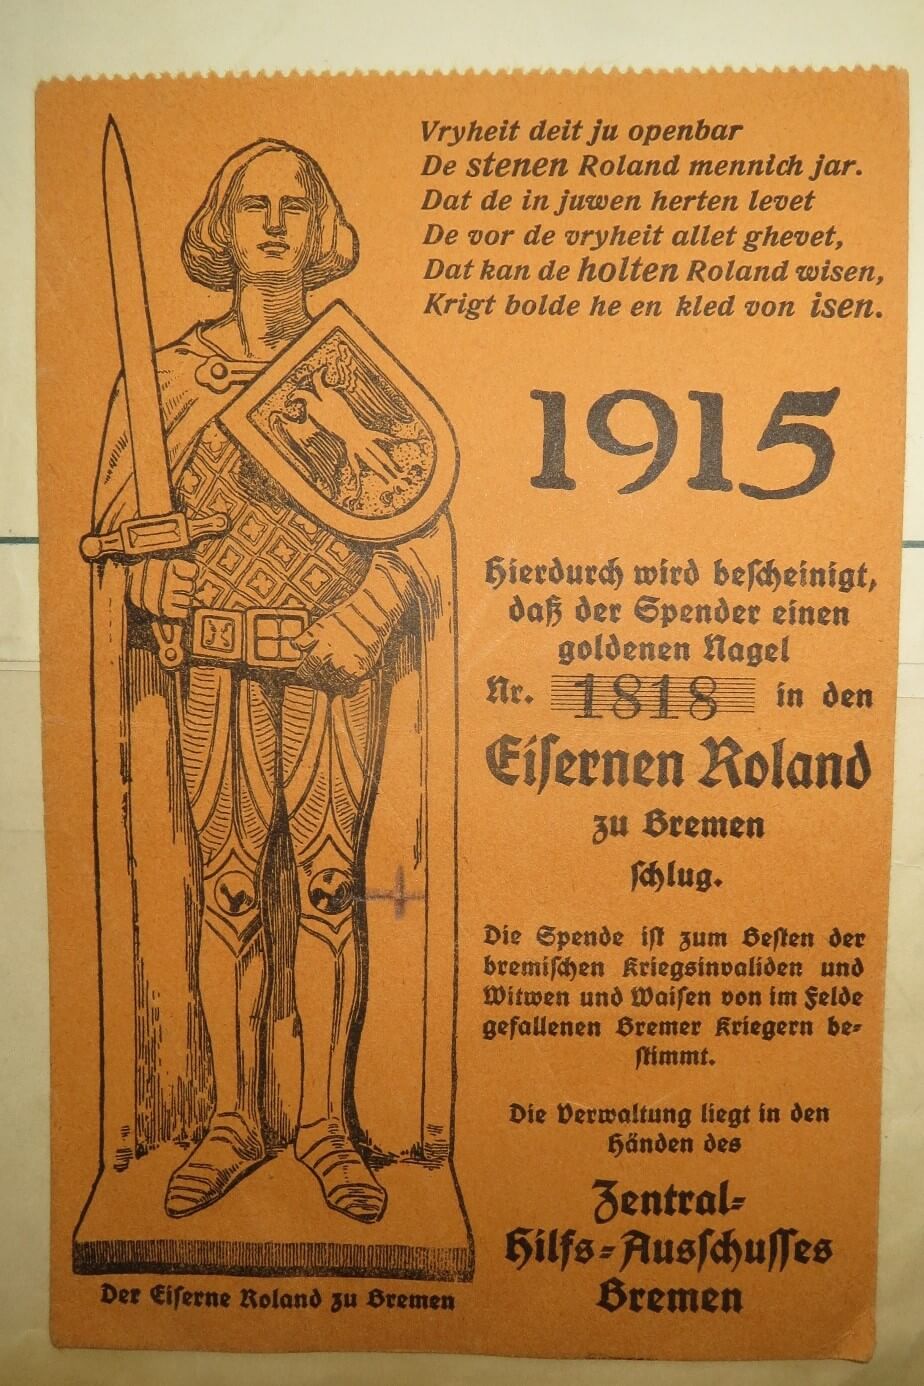 Eine Spendenbescheinigung des „Zentralen Hilfs-Ausschusses Bremen“ für die Nagelung des „Eisernen Roland“ (der tatsächlich aber aus Holz ist) ist im Original eingeklebt